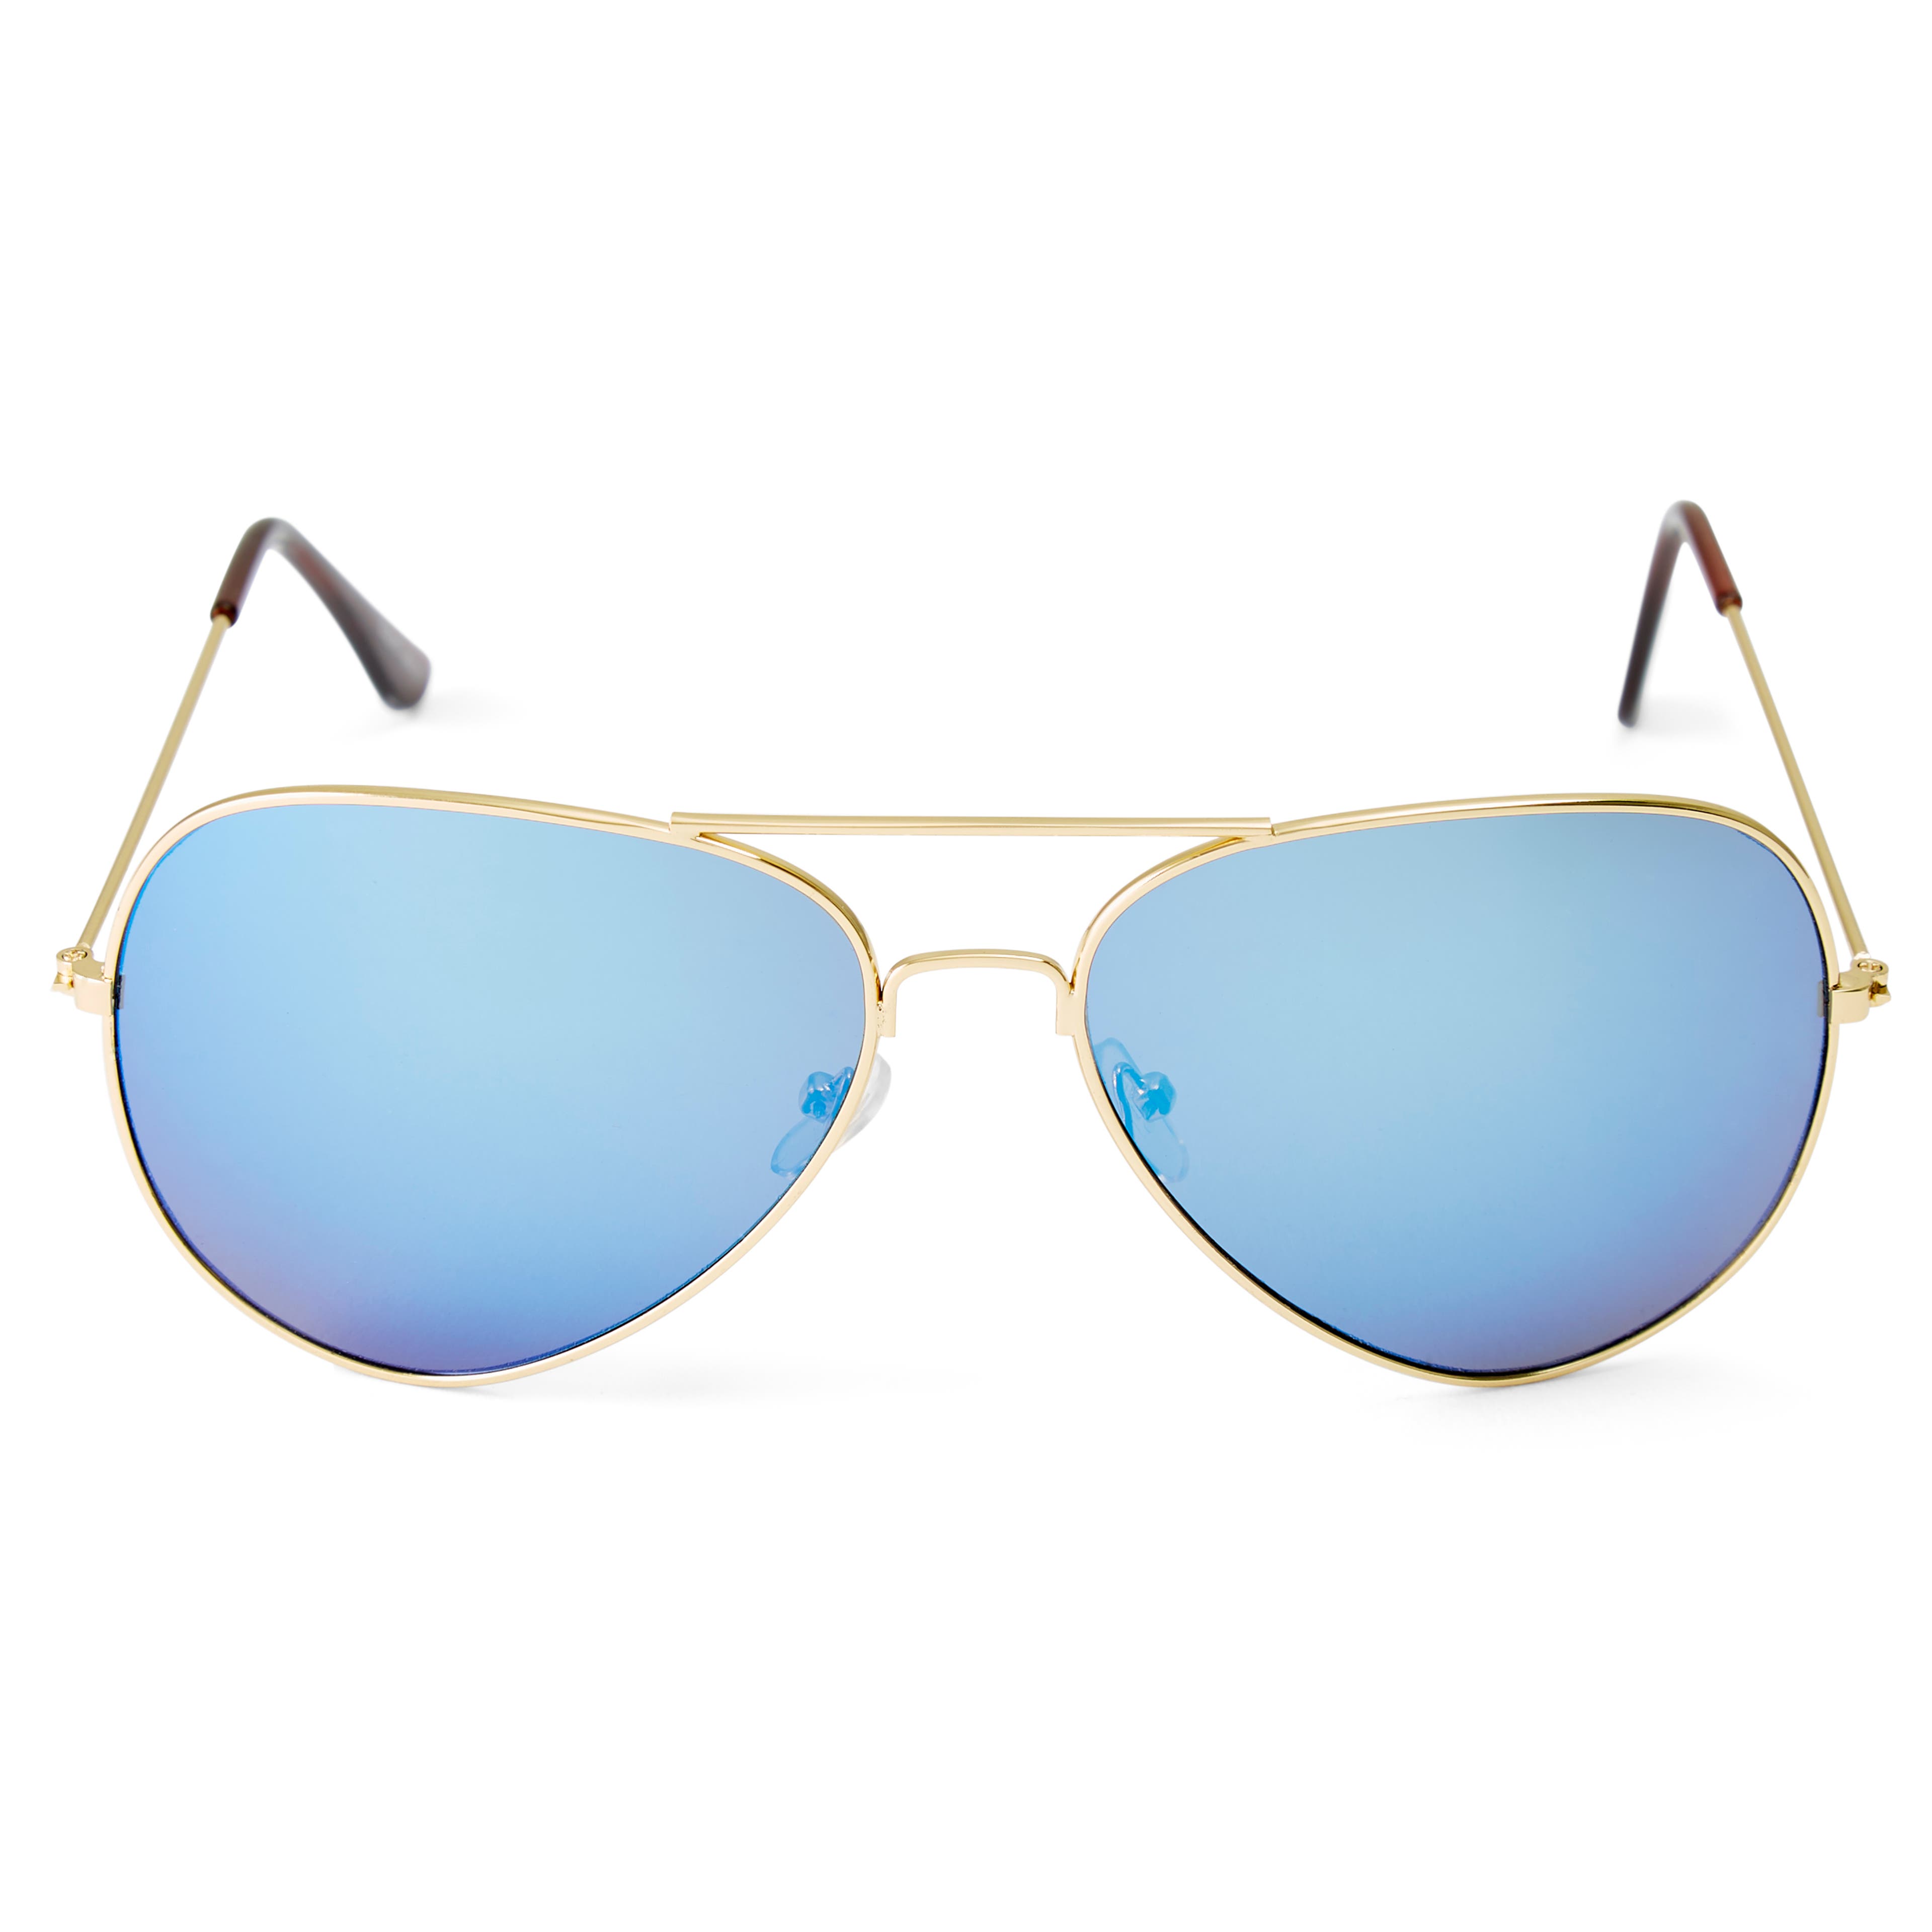 Авиаторски слънчеви очила със златисти рамки и сини стъкла